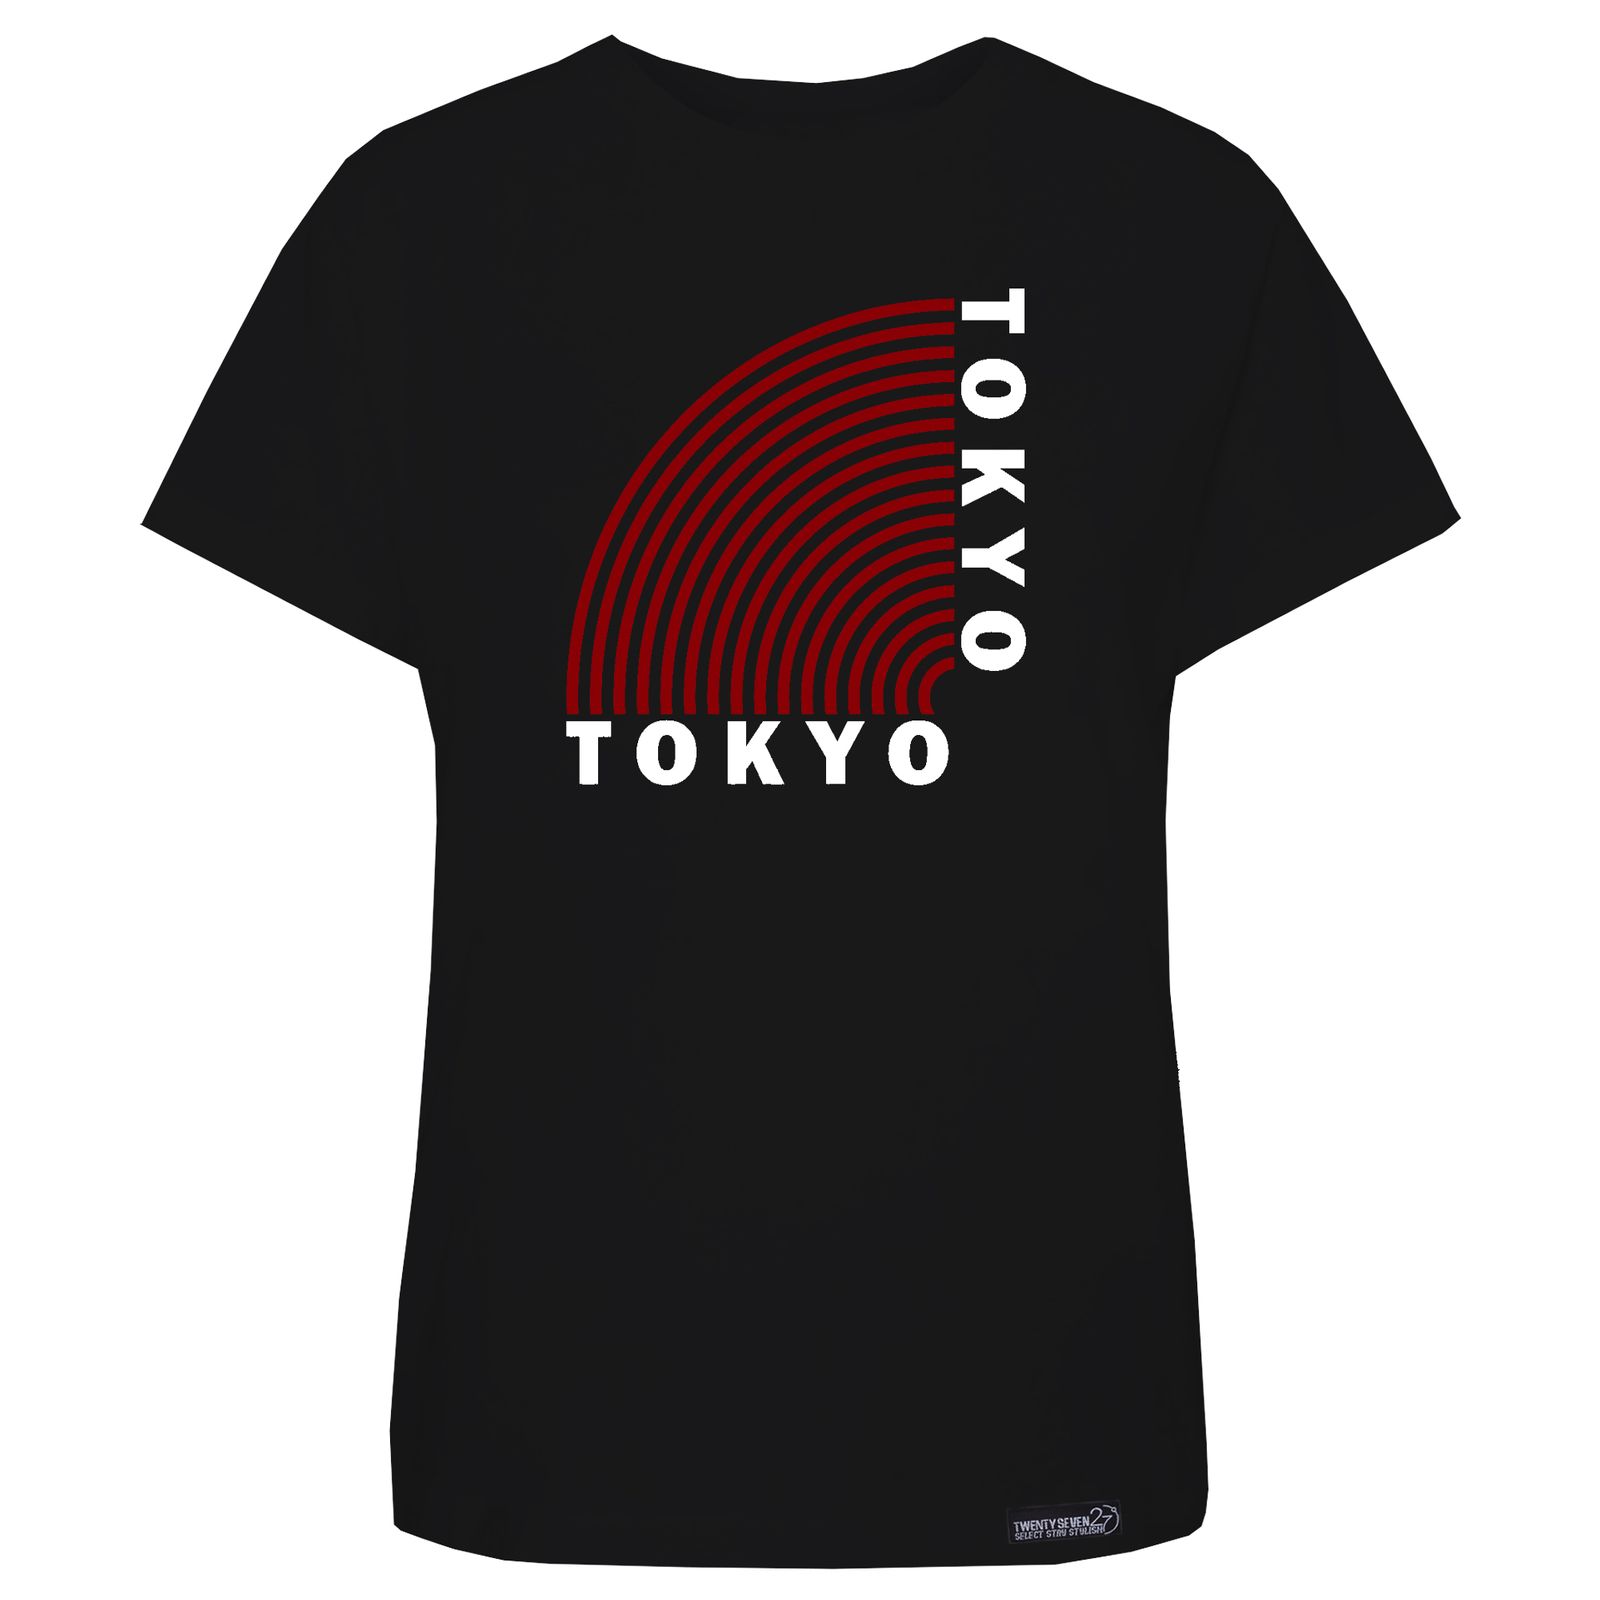 تی شرت آستین کوتاه زنانه 27 مدل Tokyo کد KV251 رنگ مشکی -  - 2